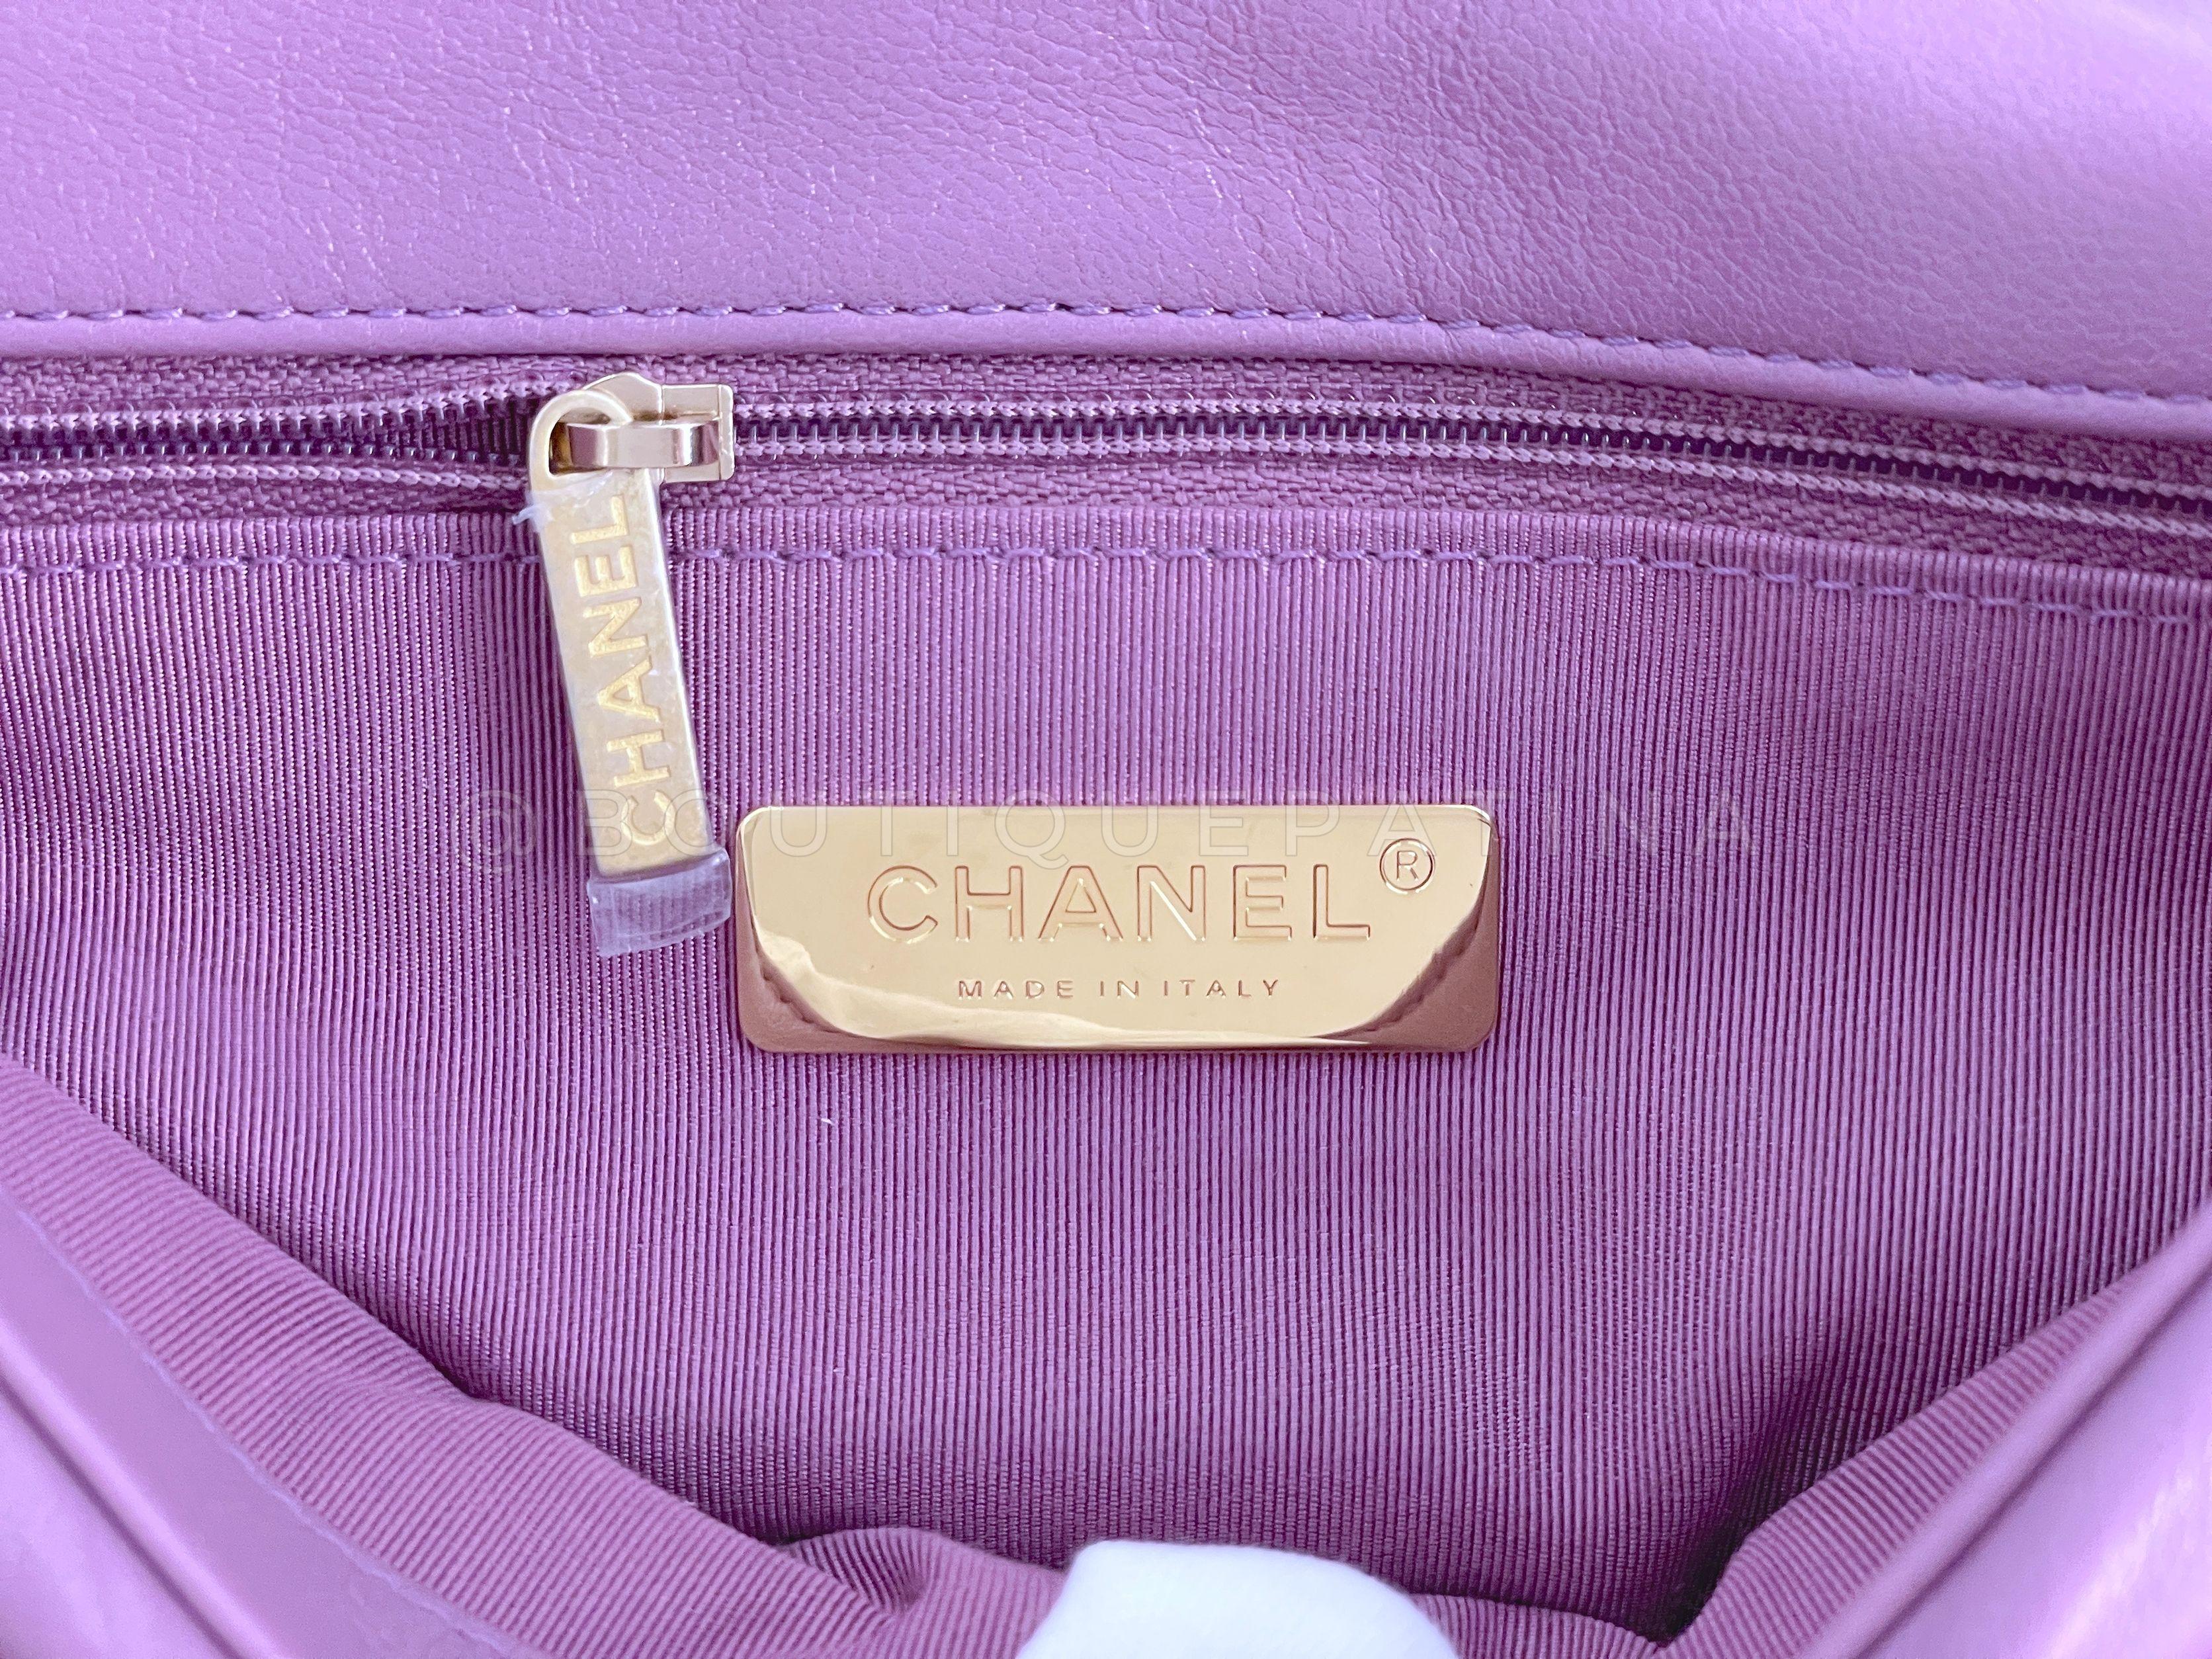 Chanel 19 20B Lavender Mauve Medium Flap Bag 65463 For Sale 5